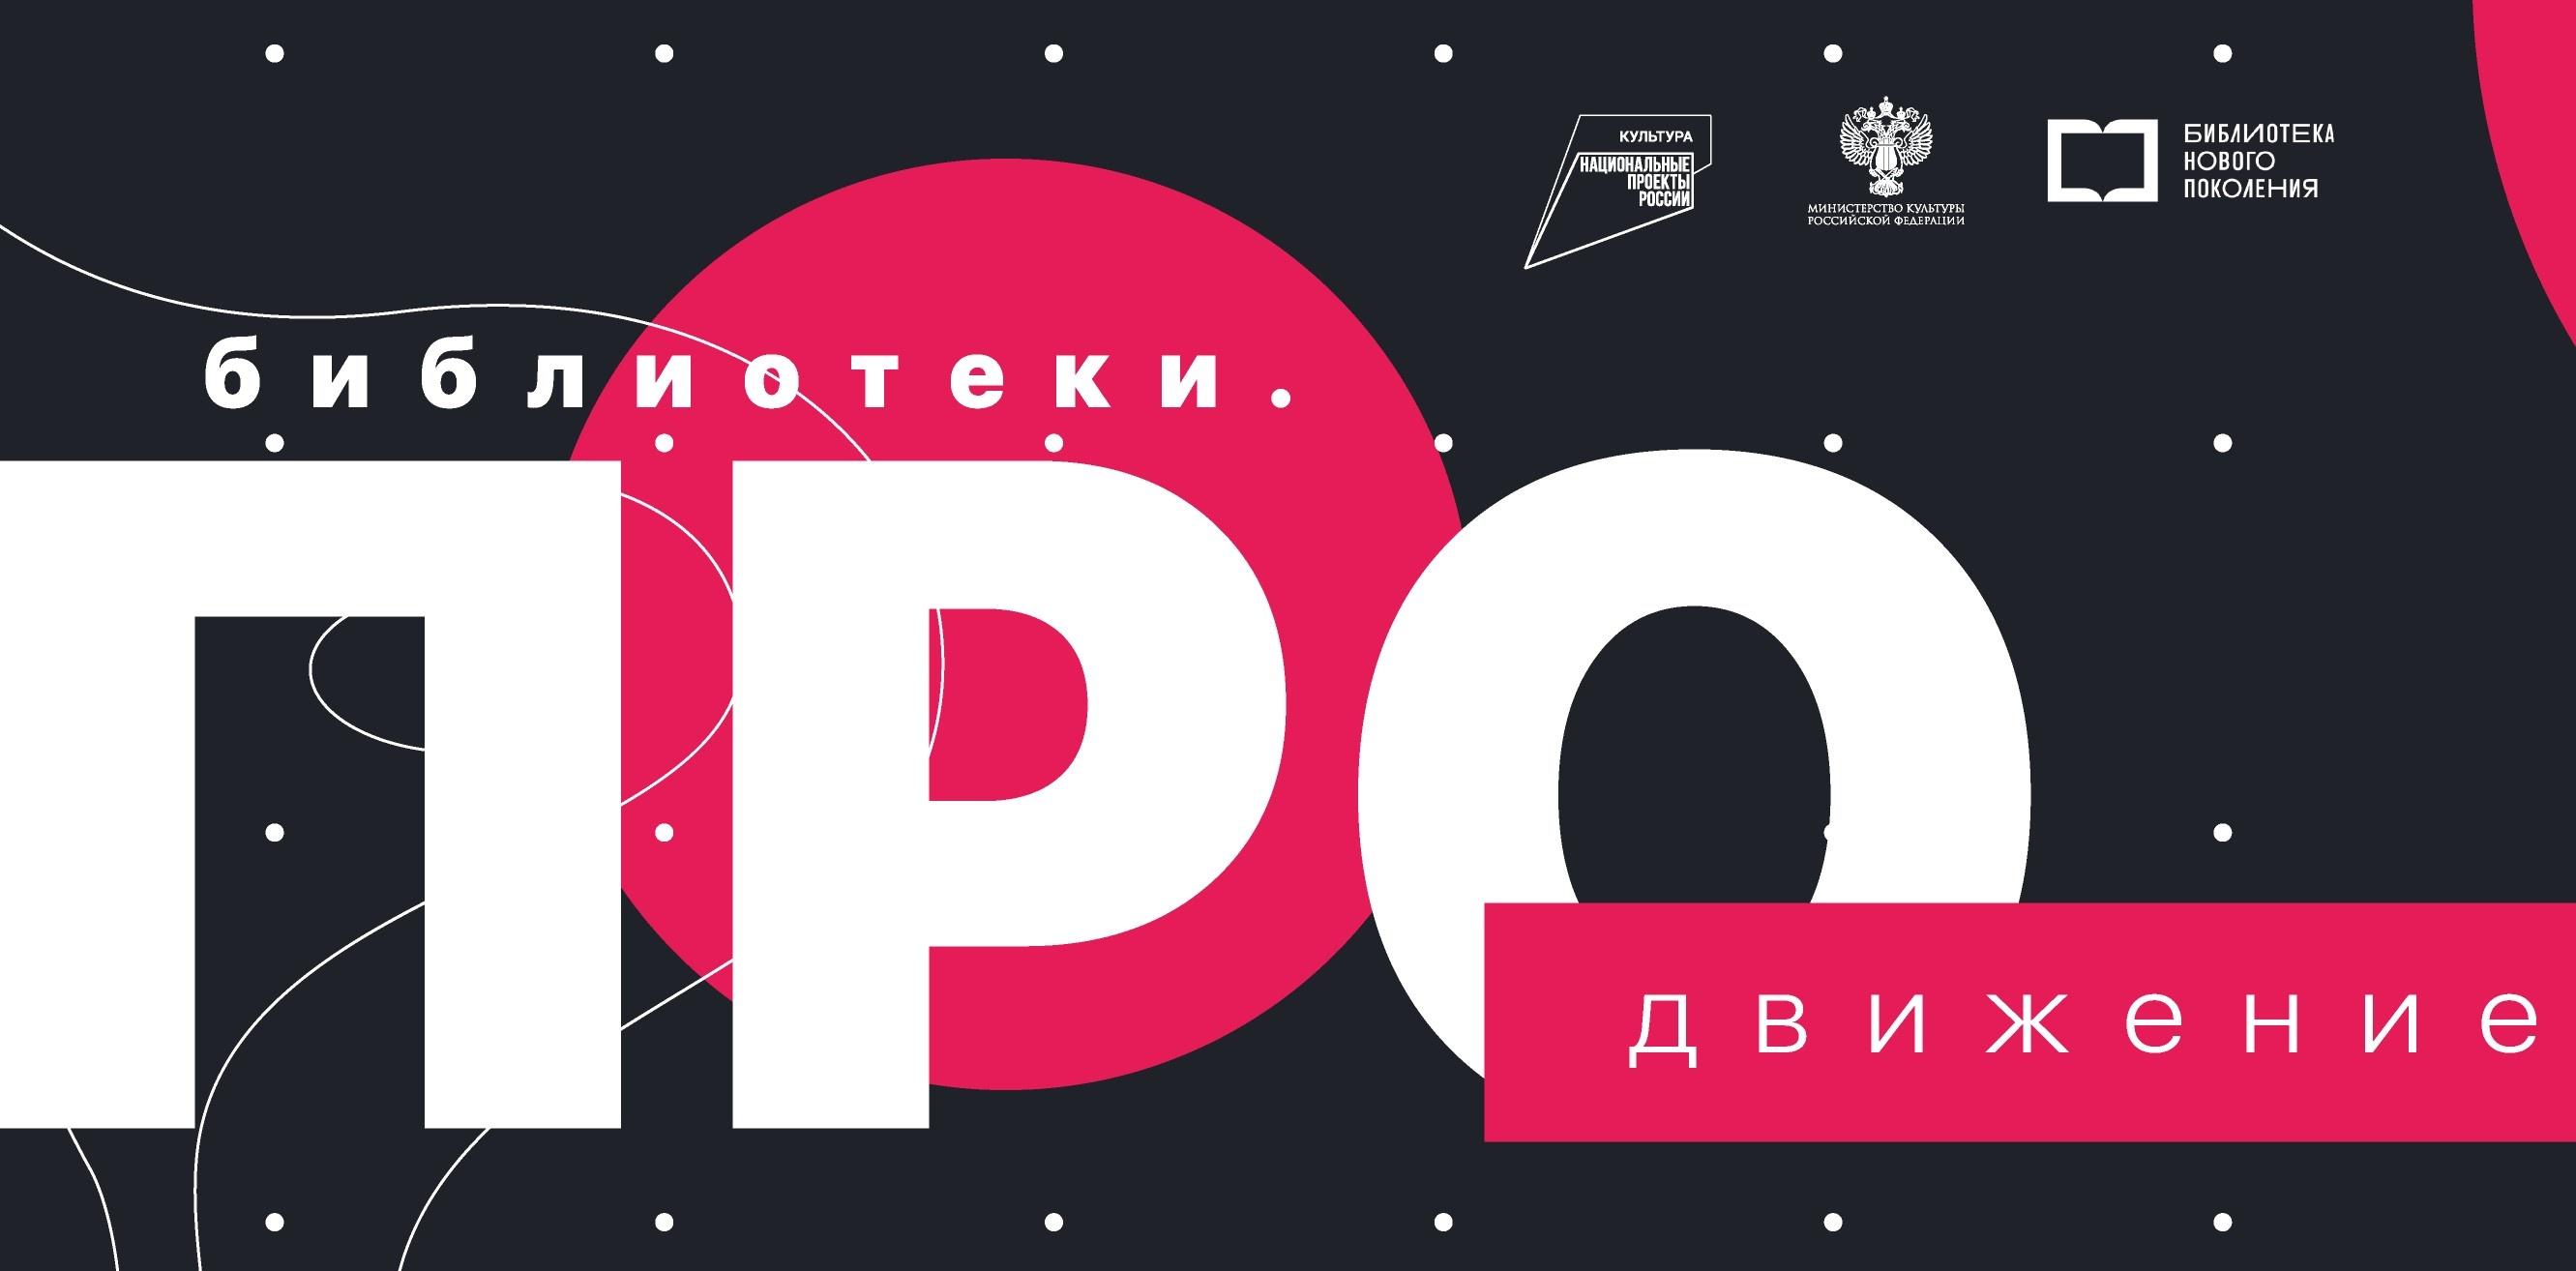 Всероссийский конкурс «Библиотеки. ПРОдвижение» принимает заявки до 1 октября